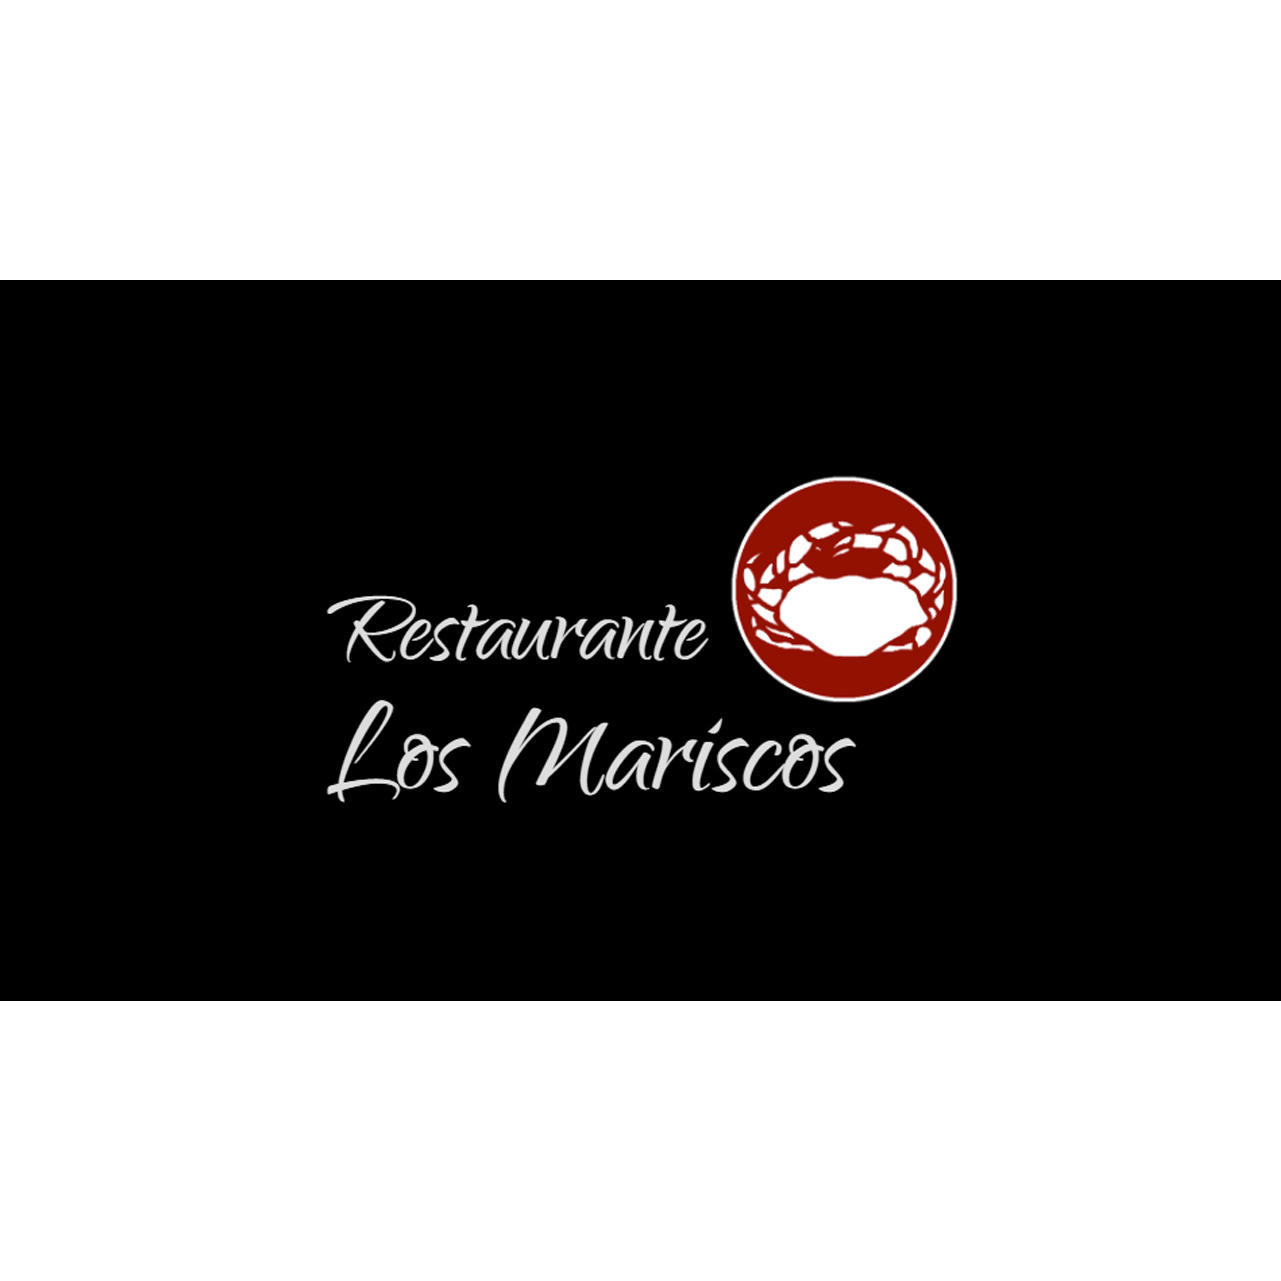 RESTAURANTE LOS MARISCOS Logo